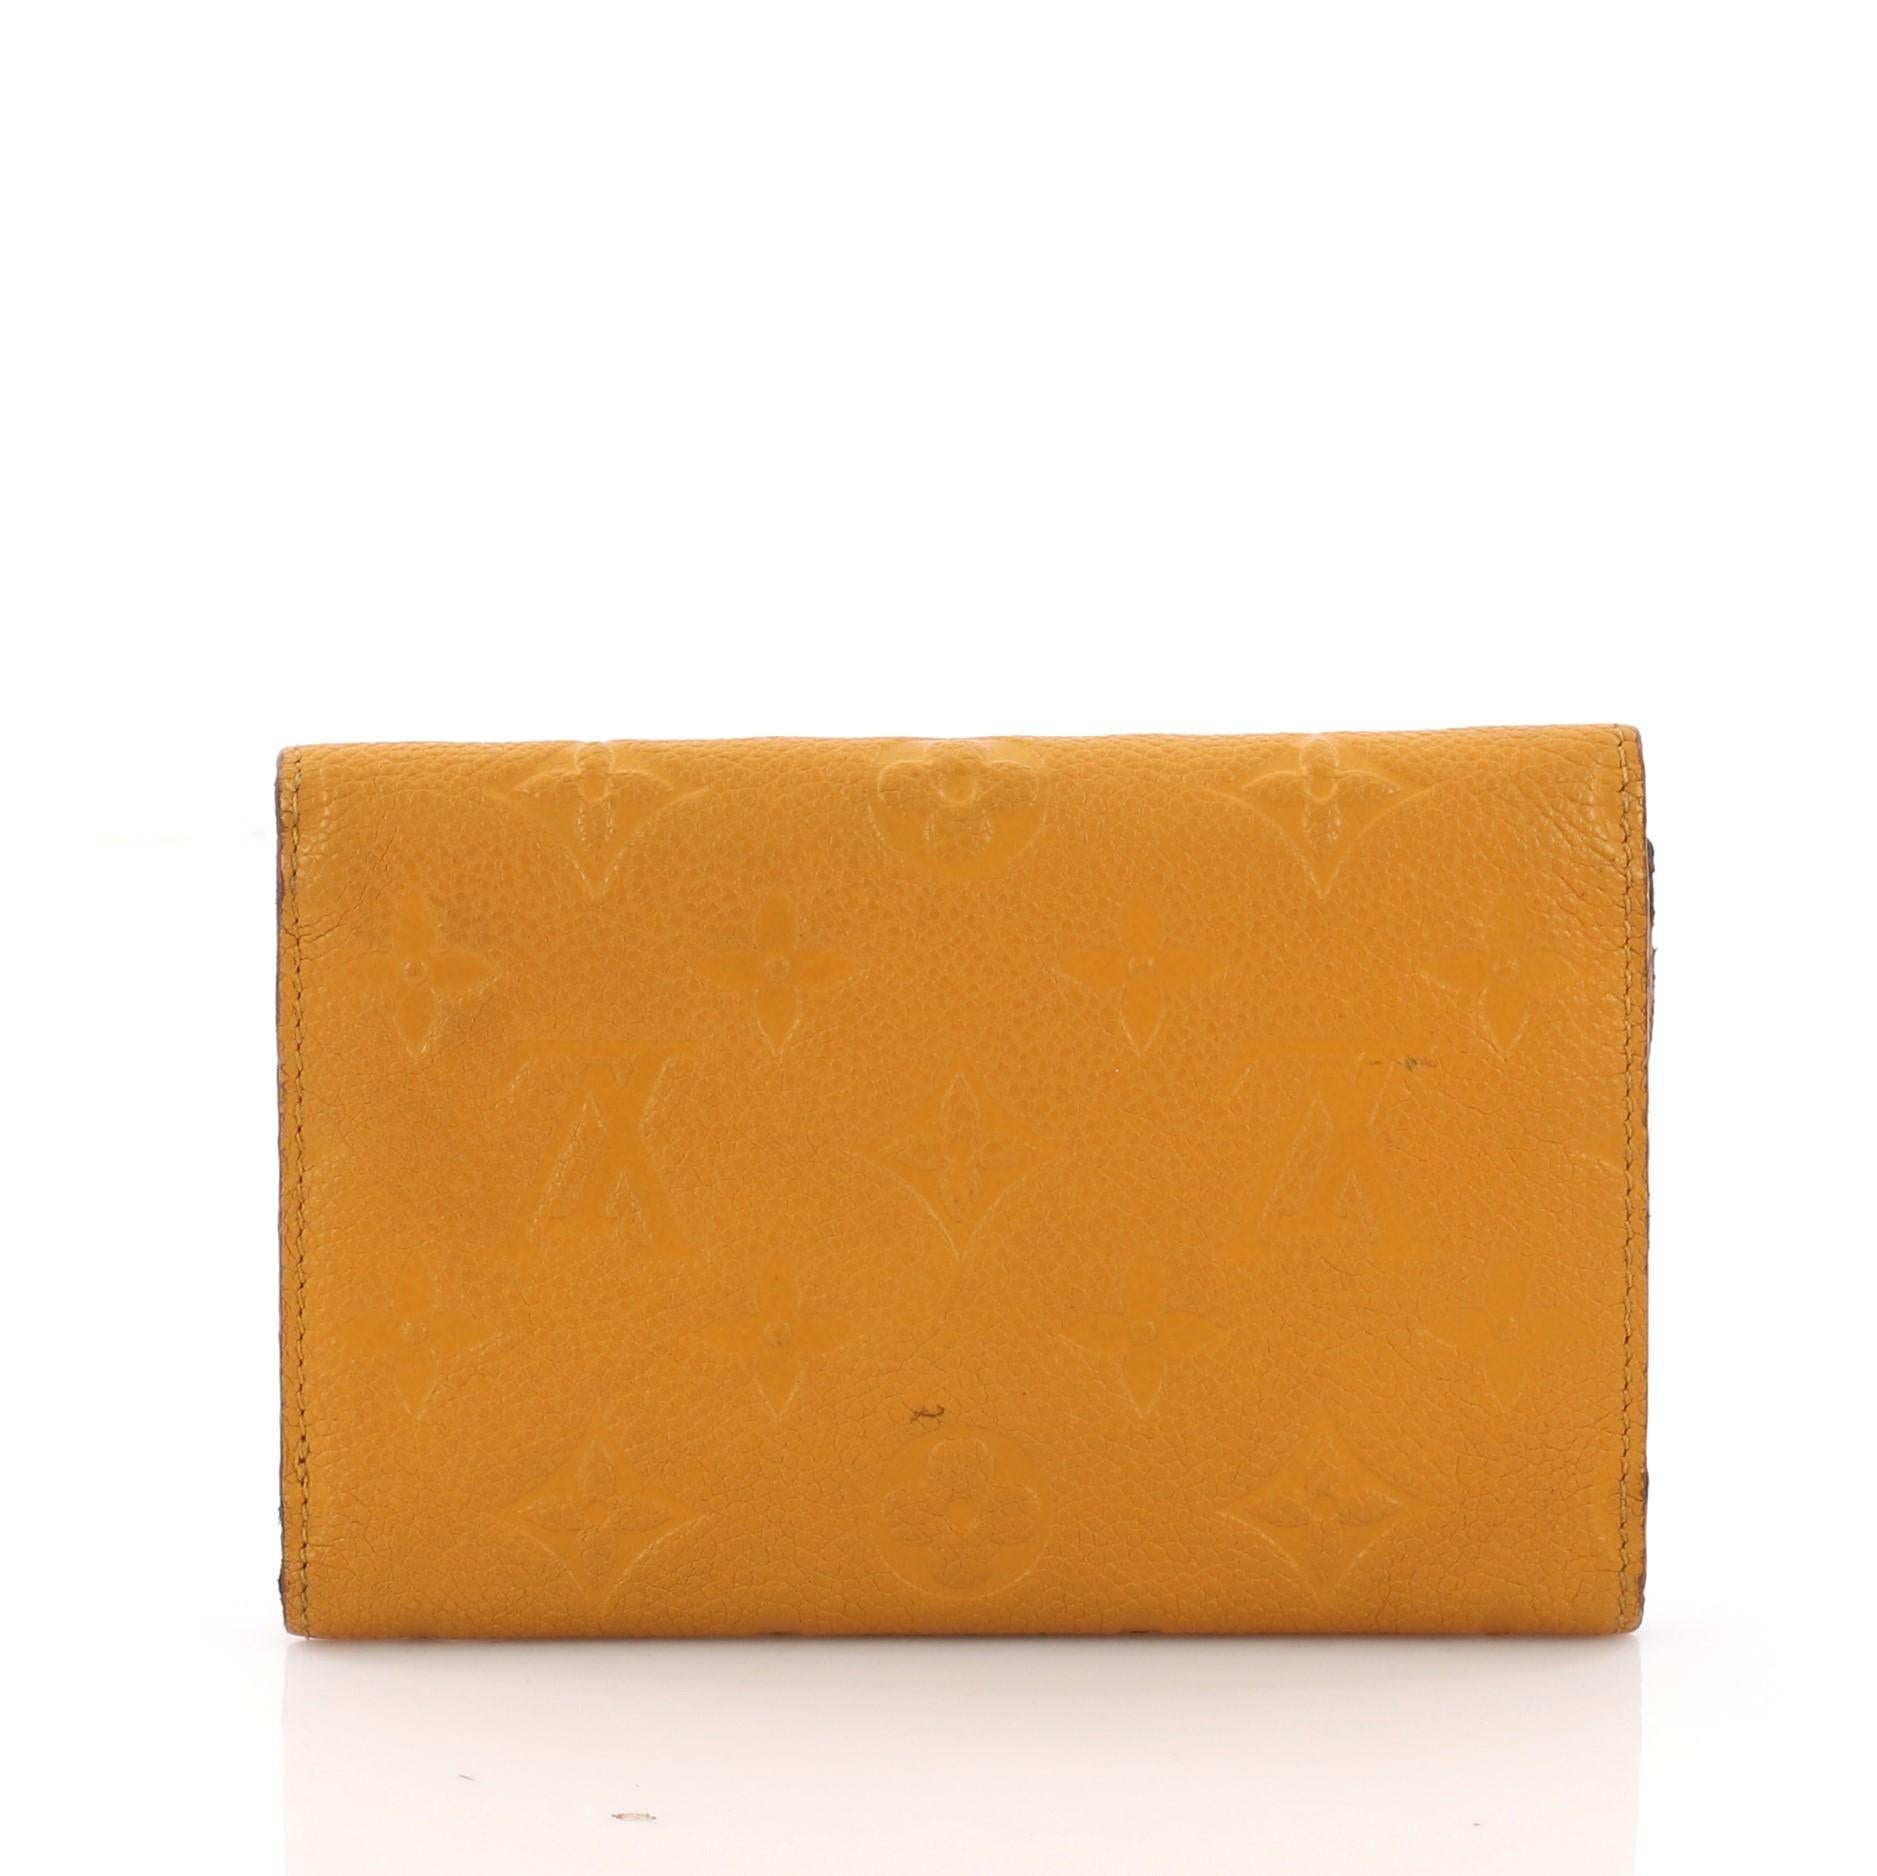 Orange Louis Vuitton Compact Curieuse Wallet Monogram Empreinte Leather